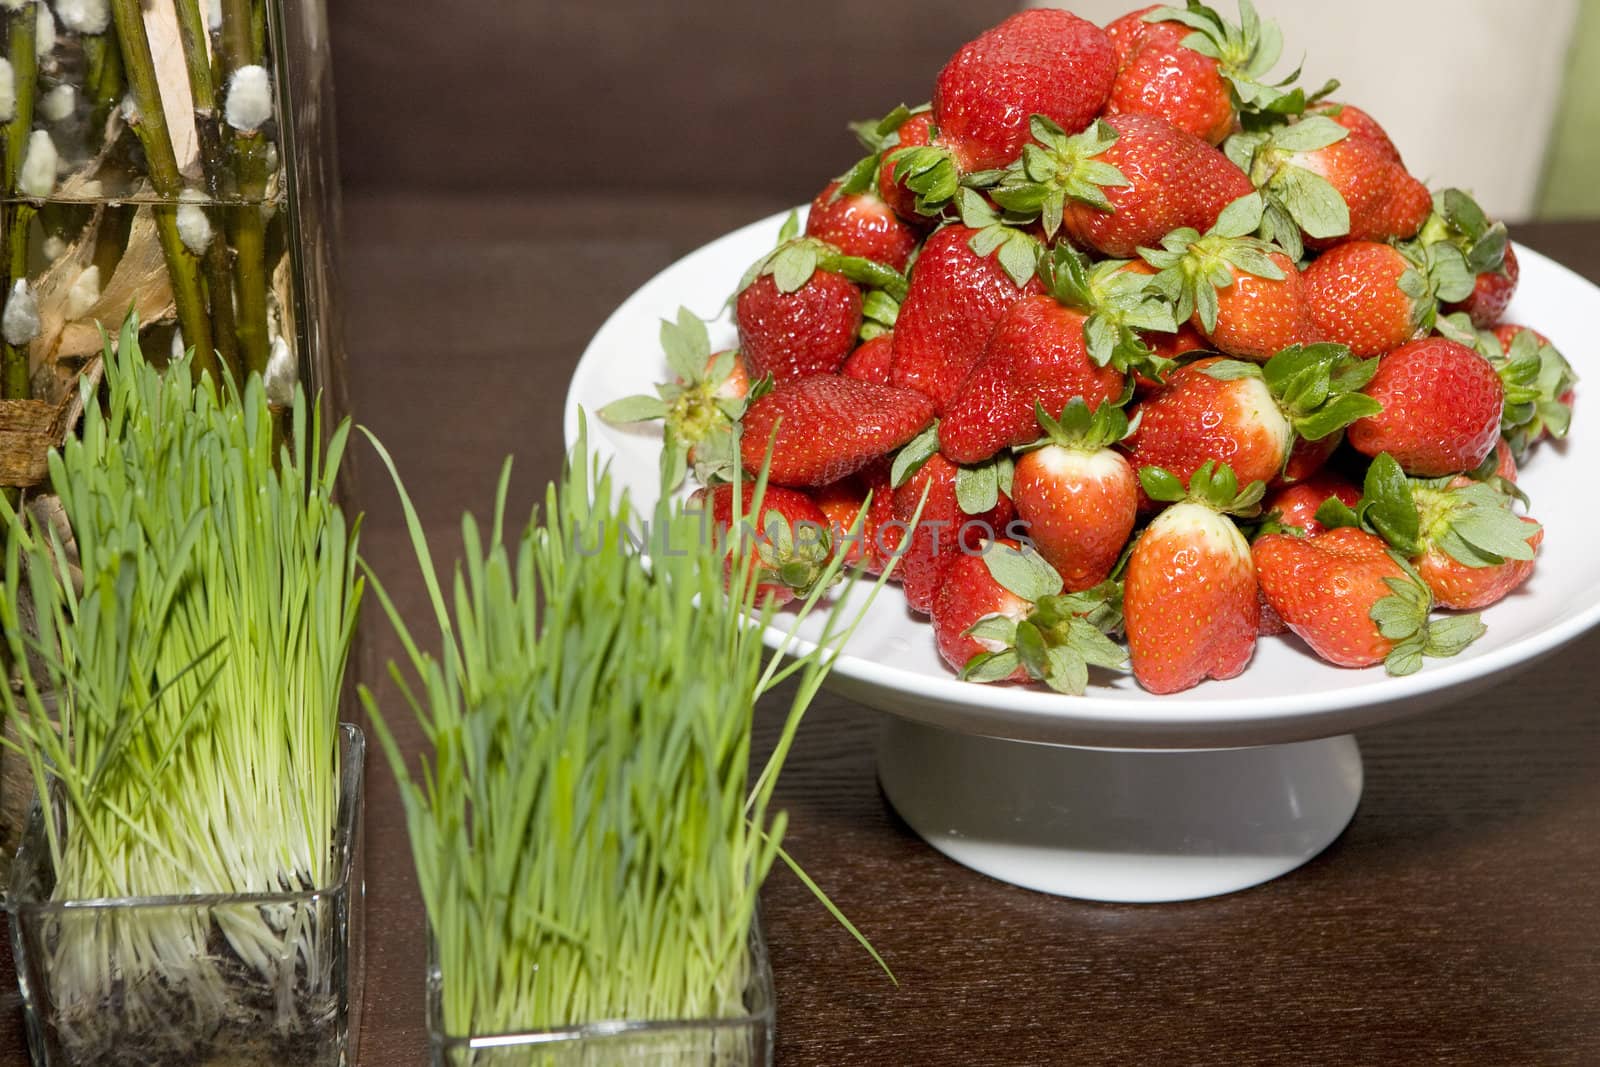 strawberries  in vase on table 